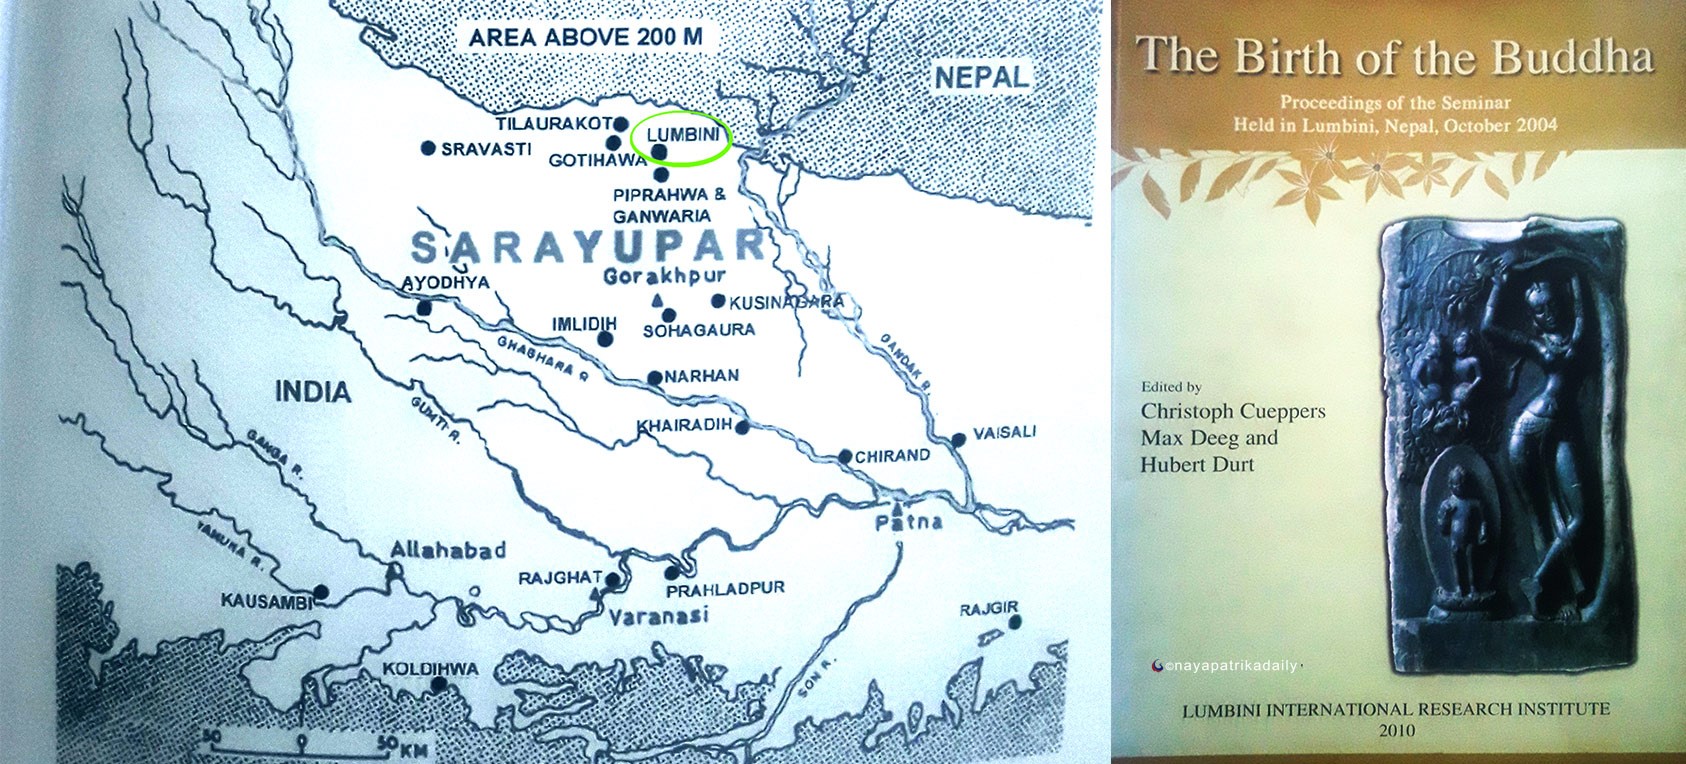 लुम्बिनी कोषको जग्गामा बसेको जापानी संस्था नै लुम्बिनी भारतमा भएको प्रचारमा सक्रिय  विवादास्पद संस्थाहरूलाई भिसासमेत निःशुल्क, गृह मन्त्रालयले थाल्यो छानबिन